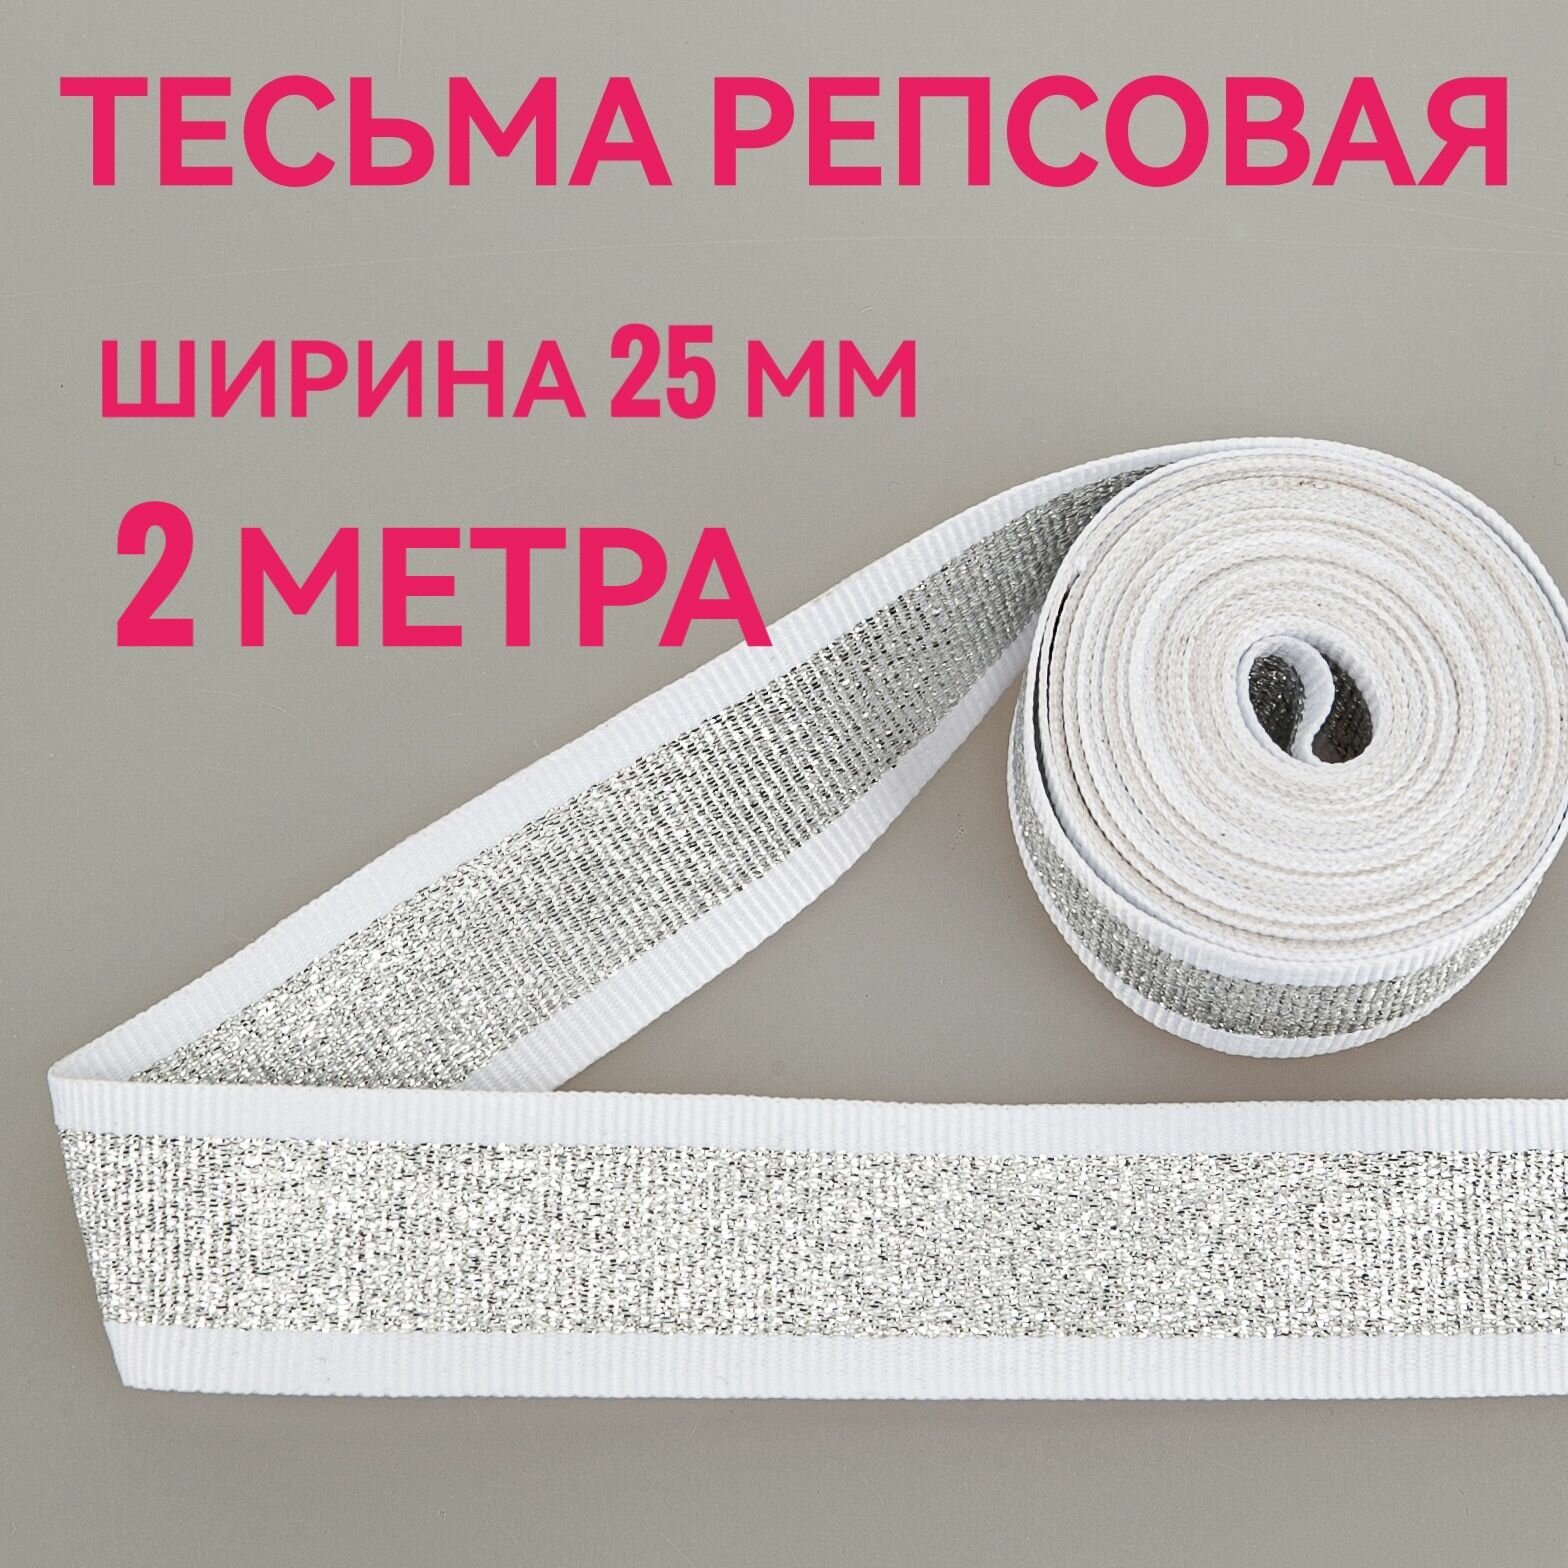 Тесьма /лента репсовая для шитья с люрексом серебро/белый ш.25 мм в упаковке 2 м для шитья творчества рукоделия.